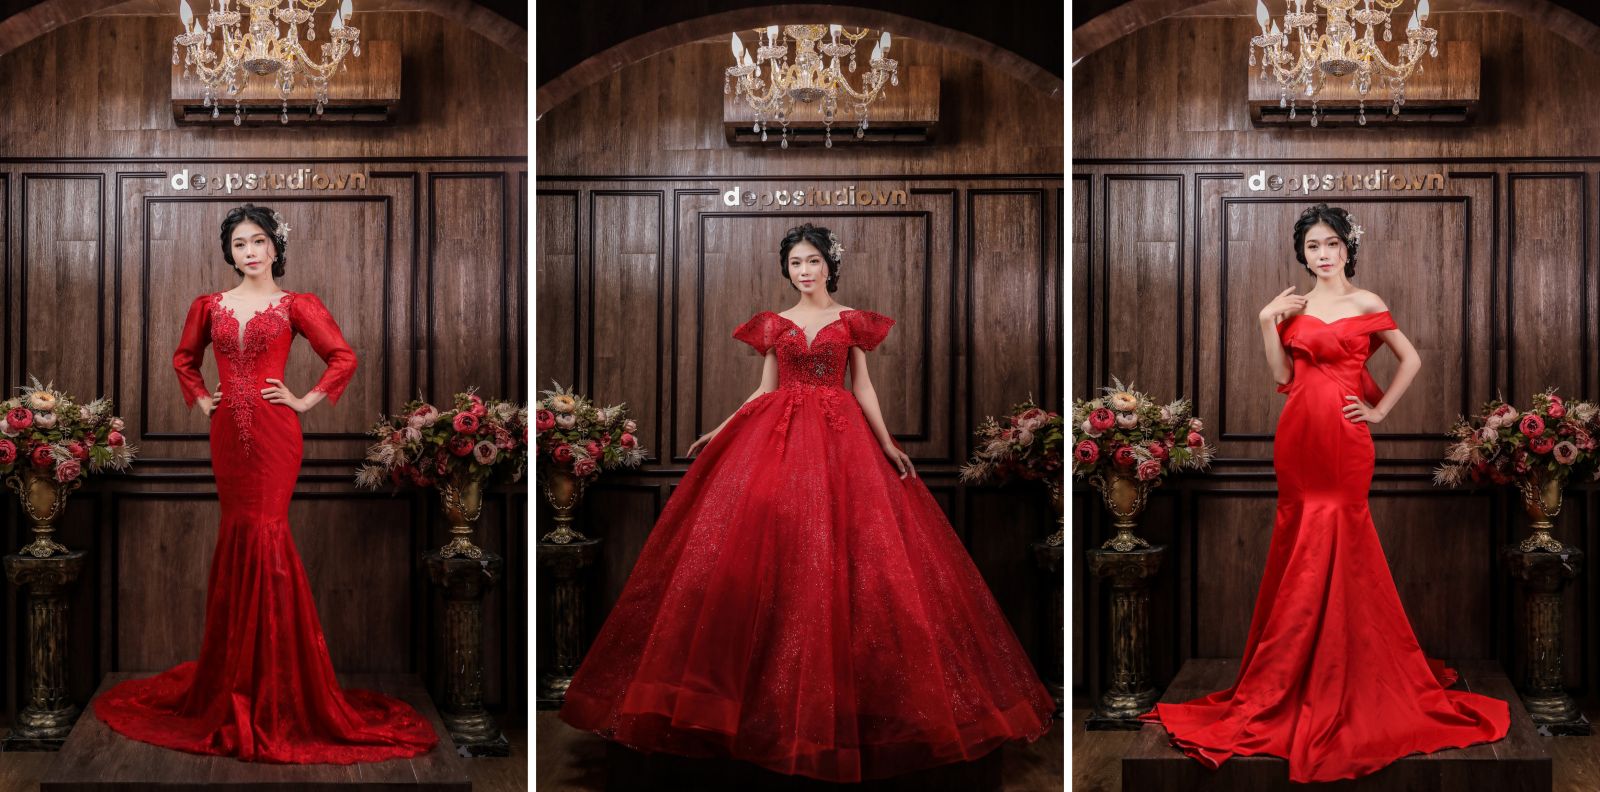 Xu hướng lựa chọn màu sắc cho chiếc váy cưới đẹp, giá rẻ nhất tại Củ Chi 